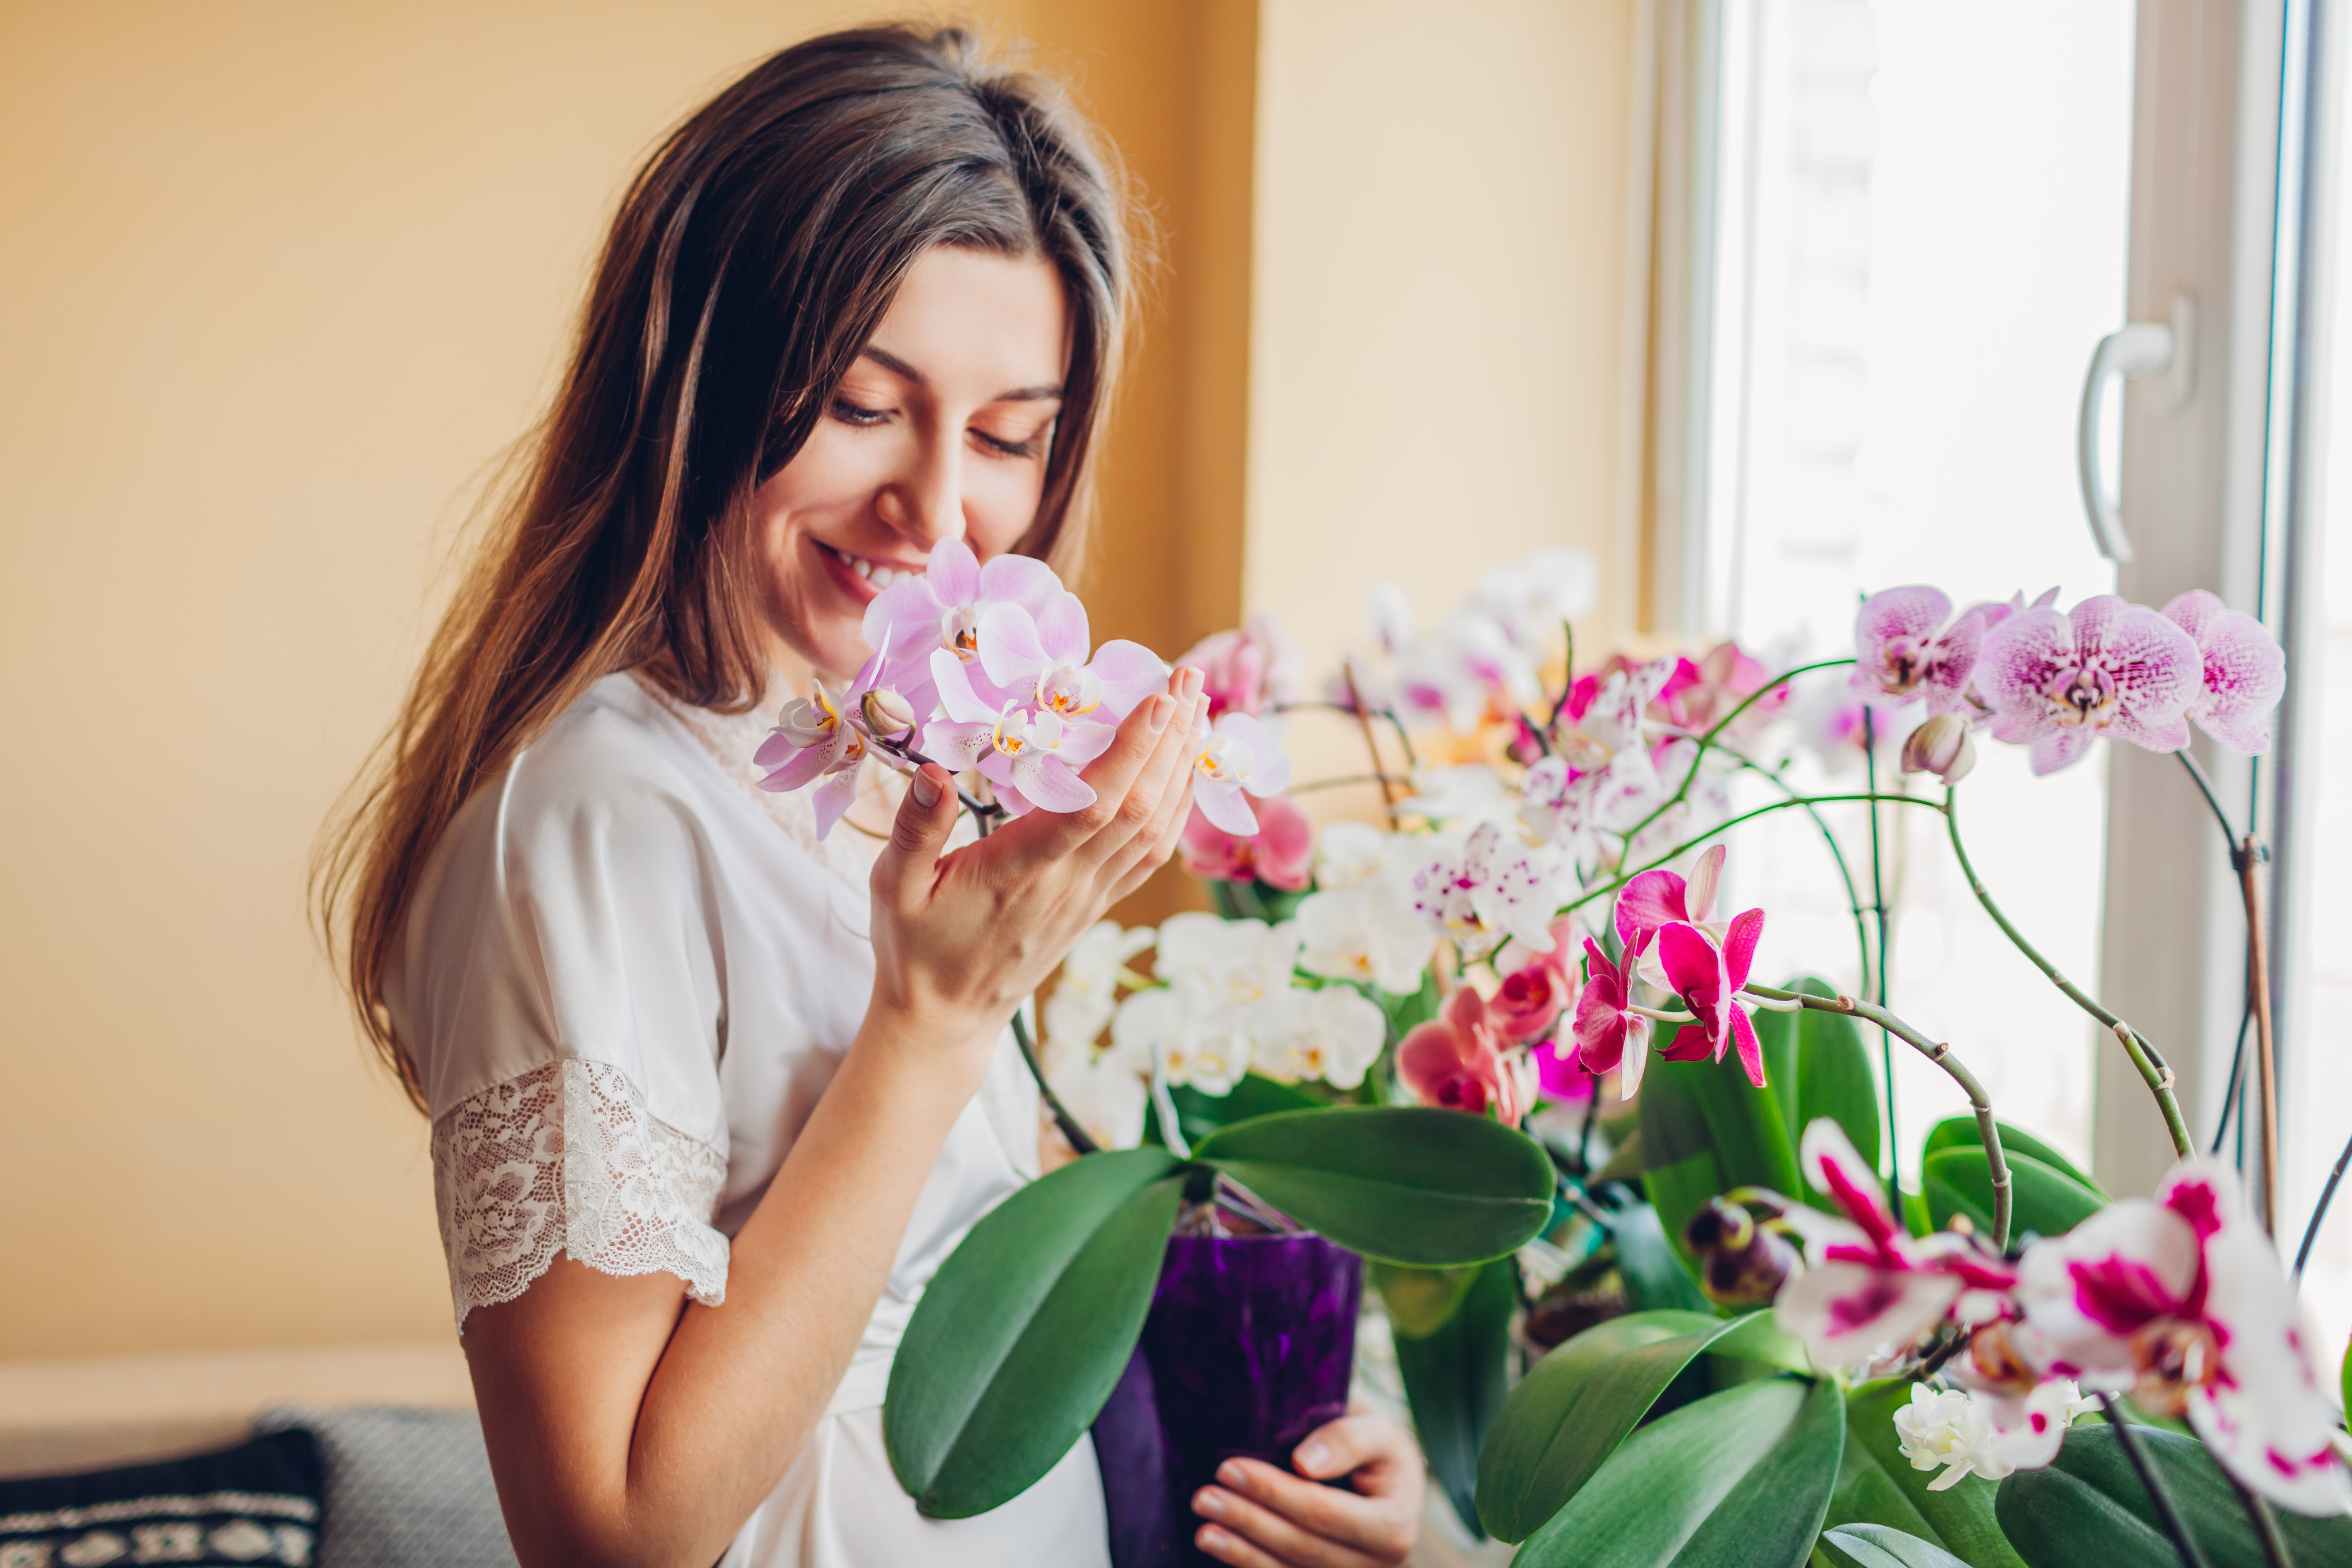 Szerencsehozó virágok a lakásban - Blikk